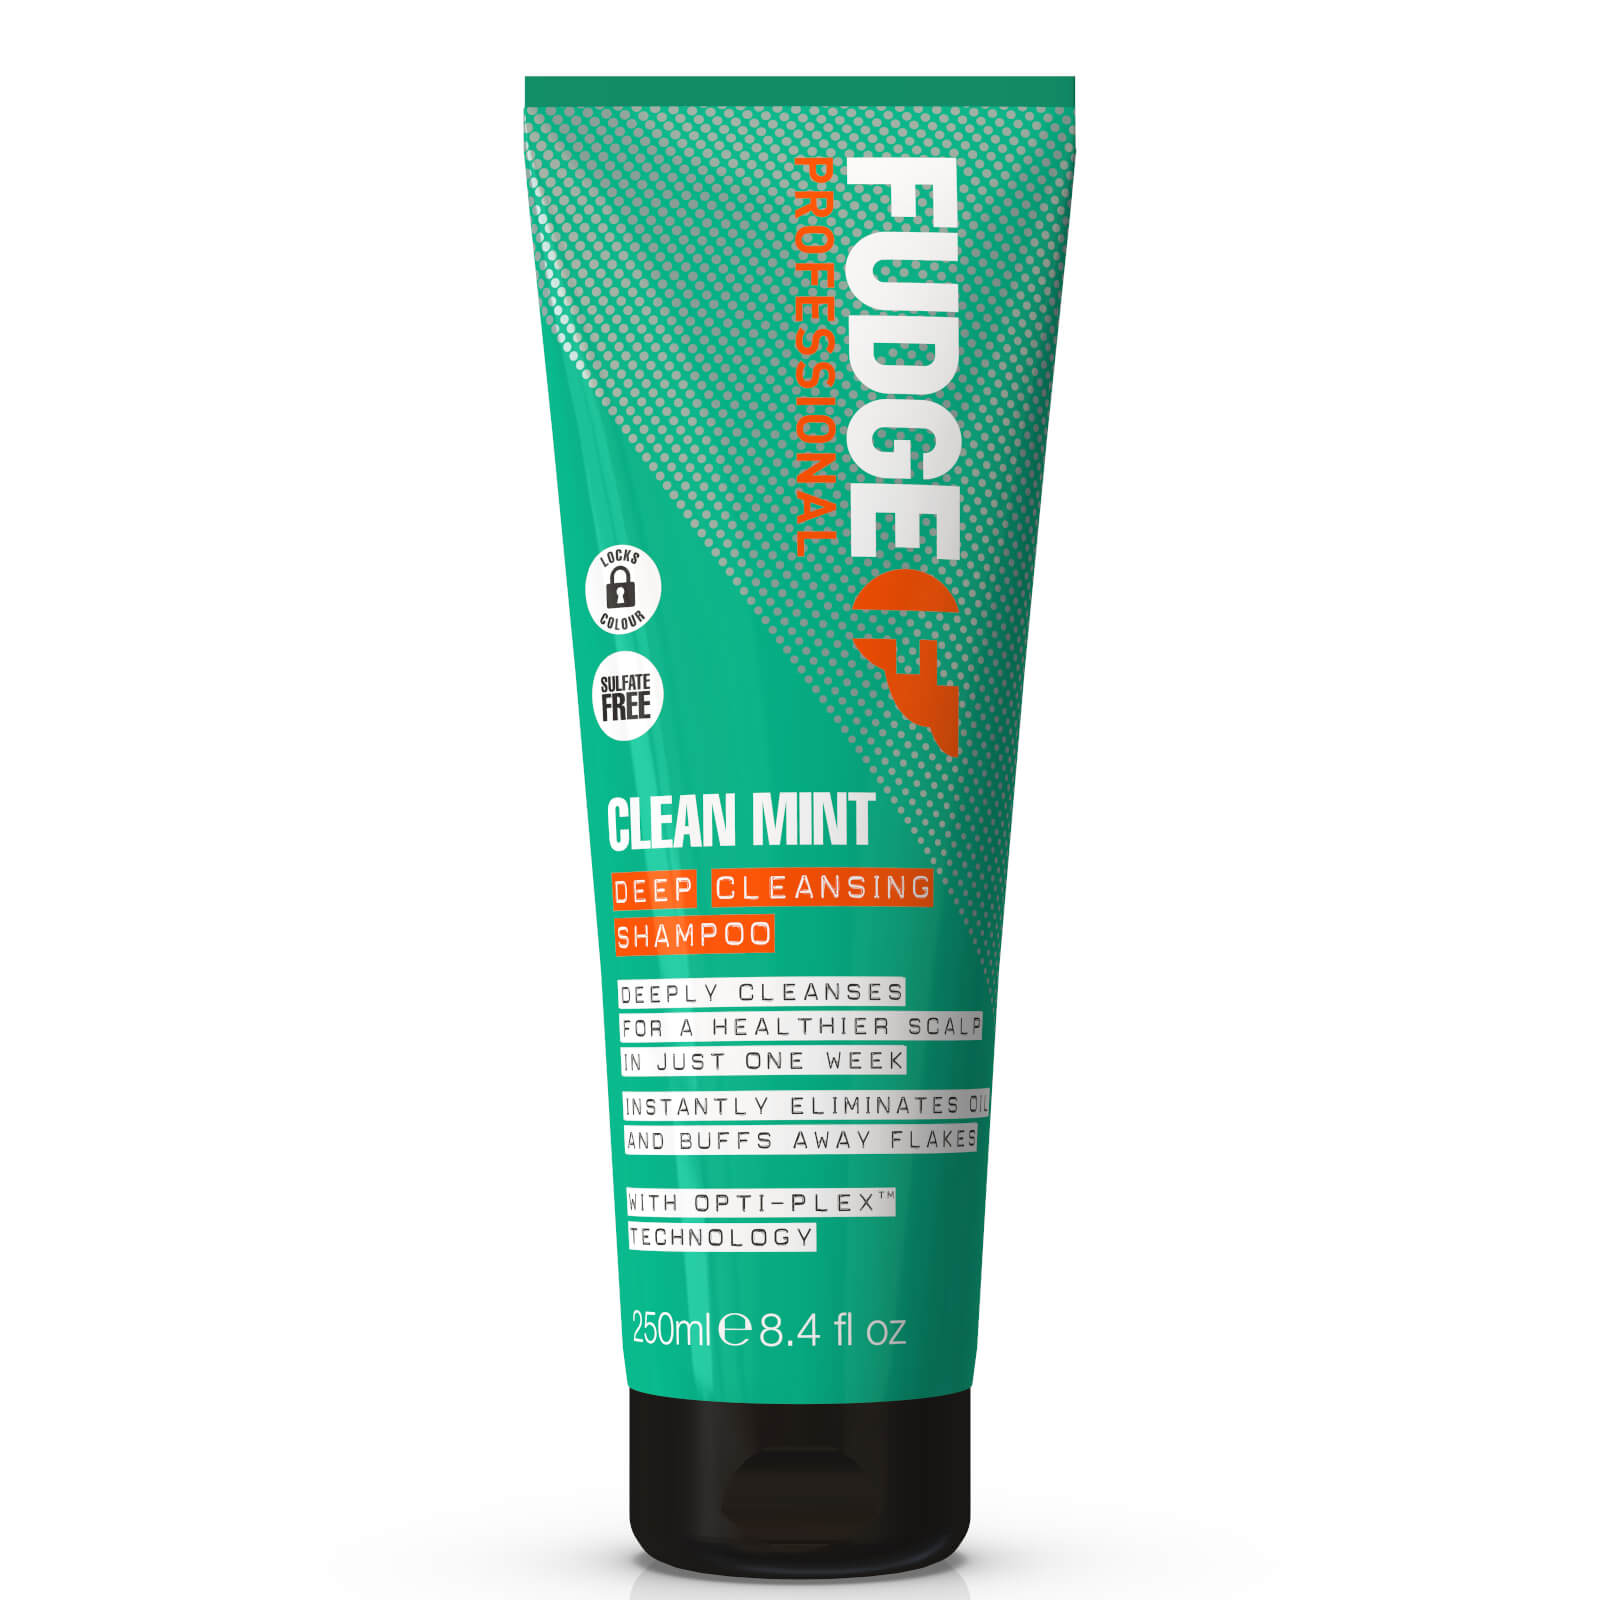 Fudge Professional Clean Mint Shampoo 250ml lookfantastic.com imagine